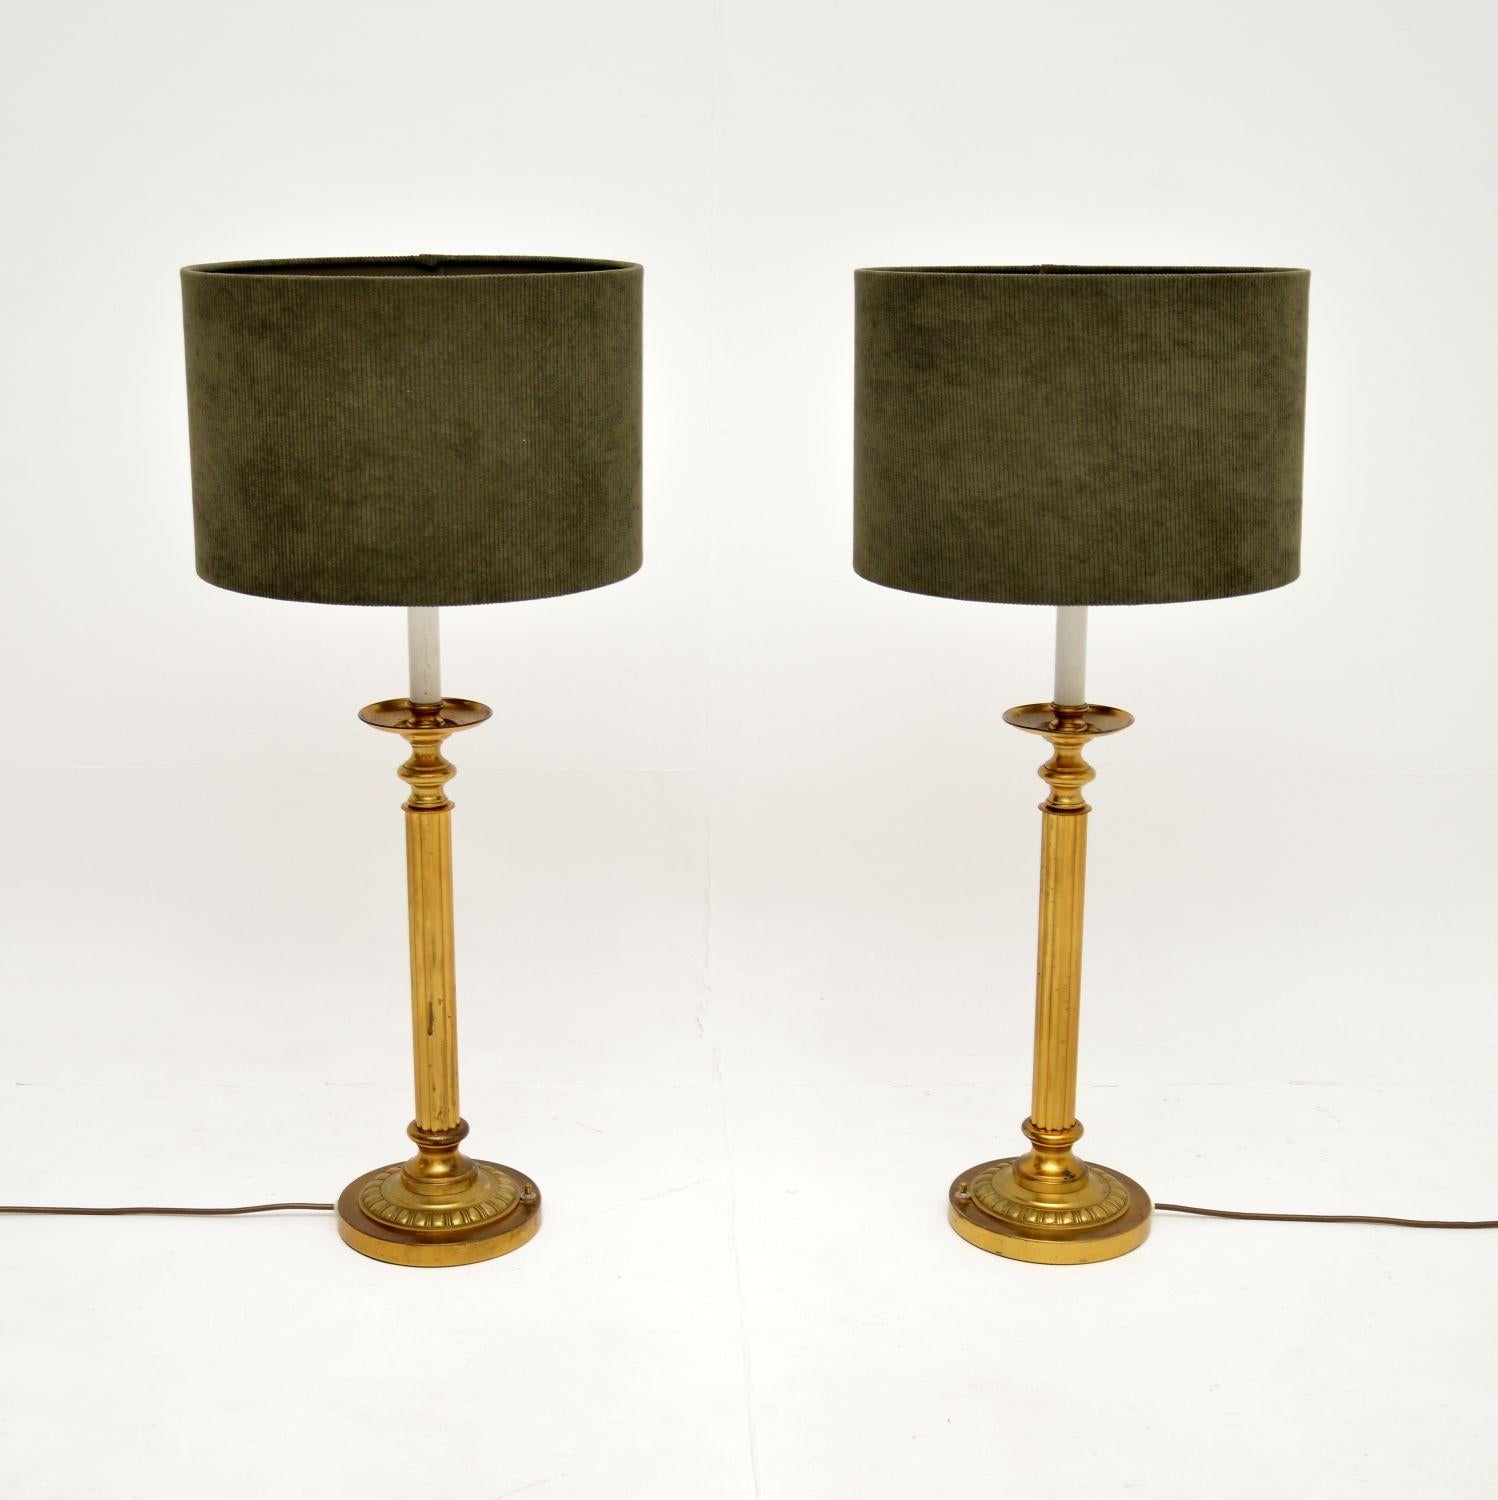 Une belle et impressionnante paire de lampes de table anciennes en laiton cannelé. Ils ont été fabriqués en Angleterre et nous les daterions des années 1920-30.

Ils sont d'une grande taille, hauts et frappants, et la qualité est étonnante. Ils sont